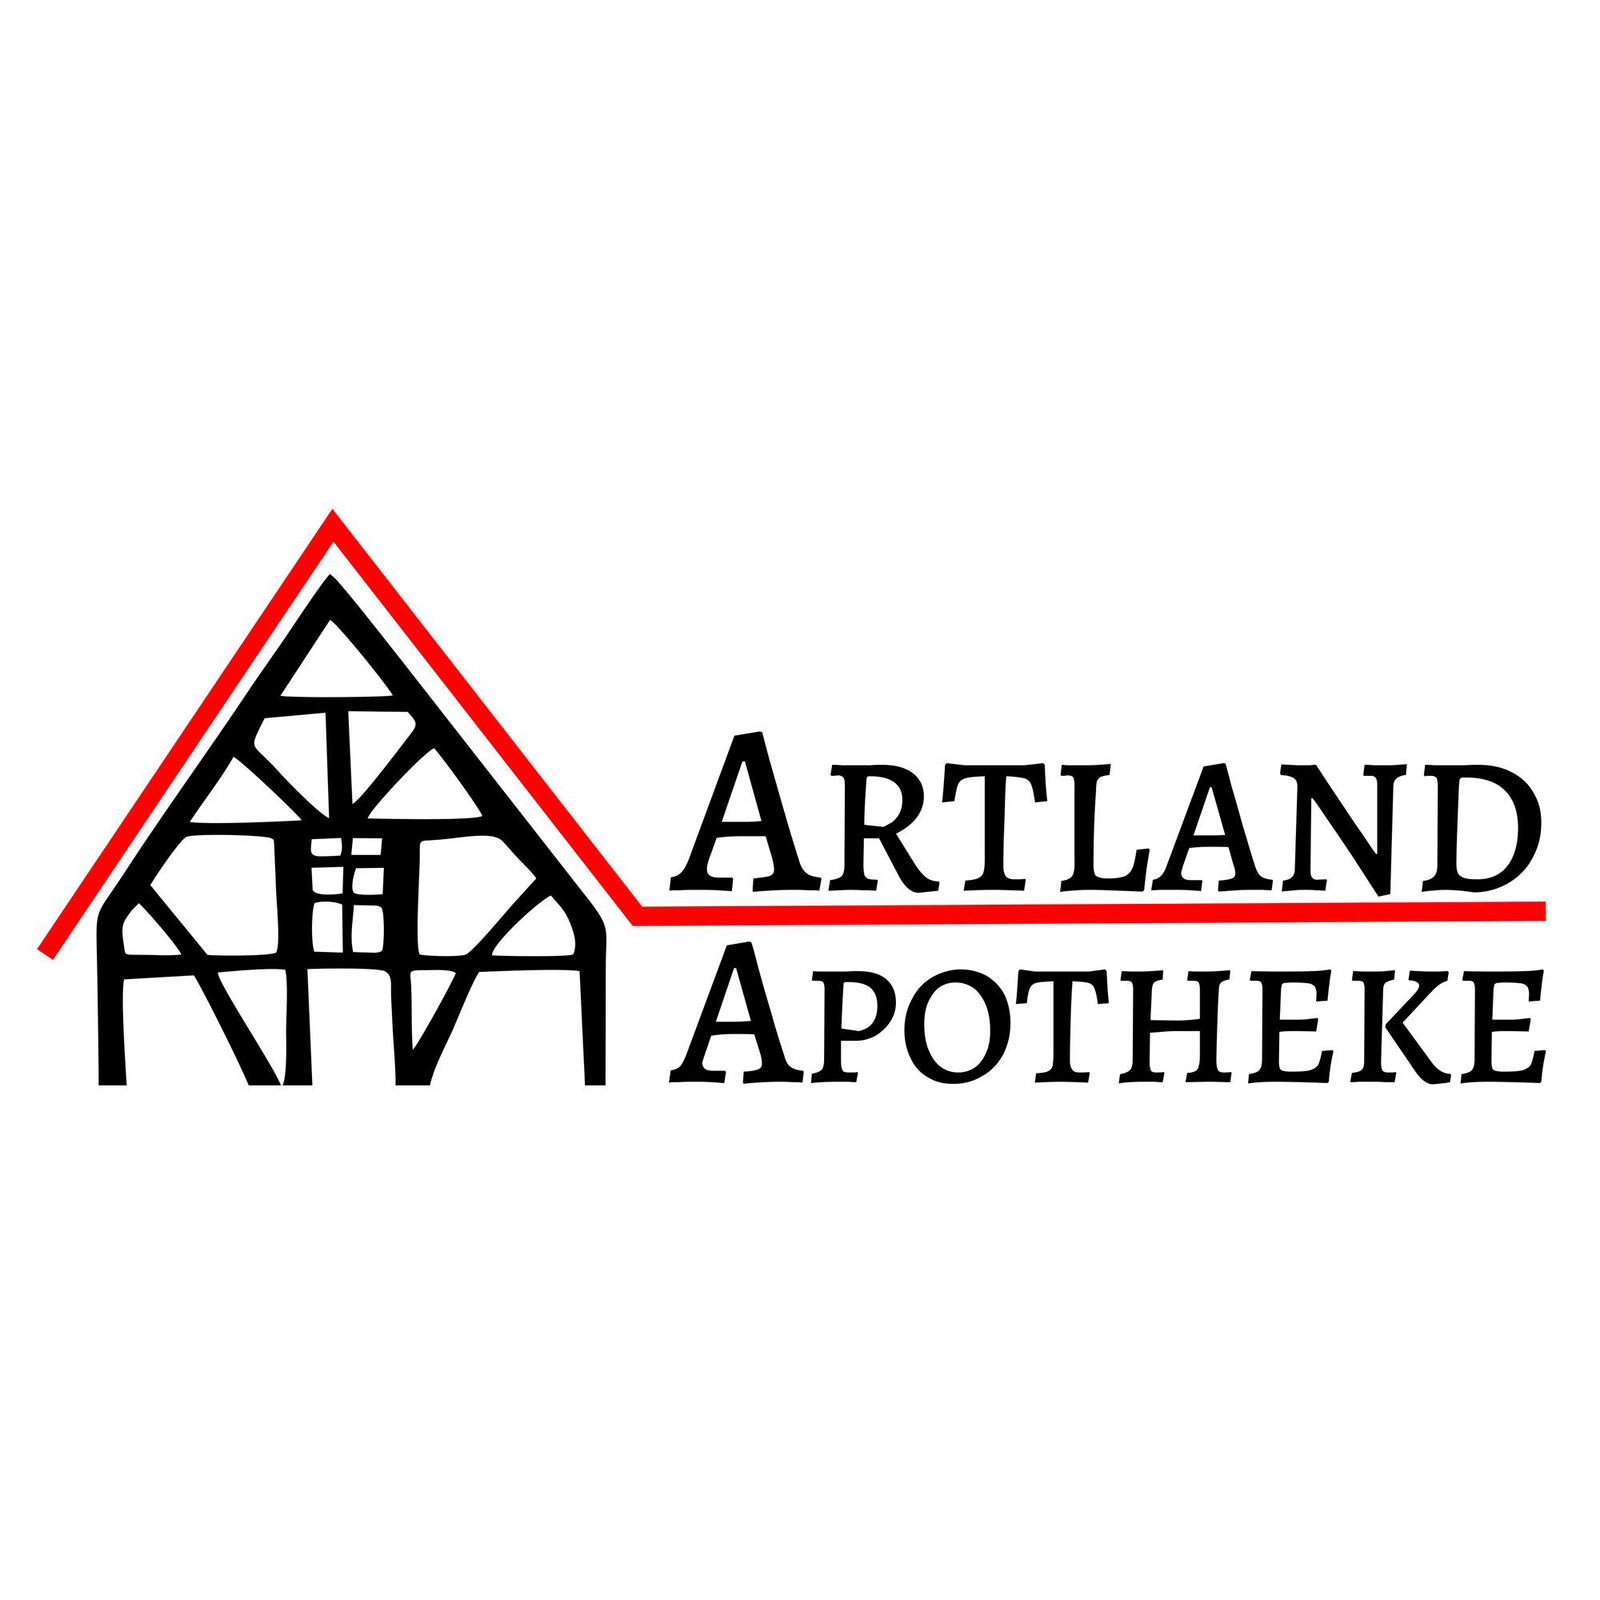 Artland-Apotheke in Menslage - Logo